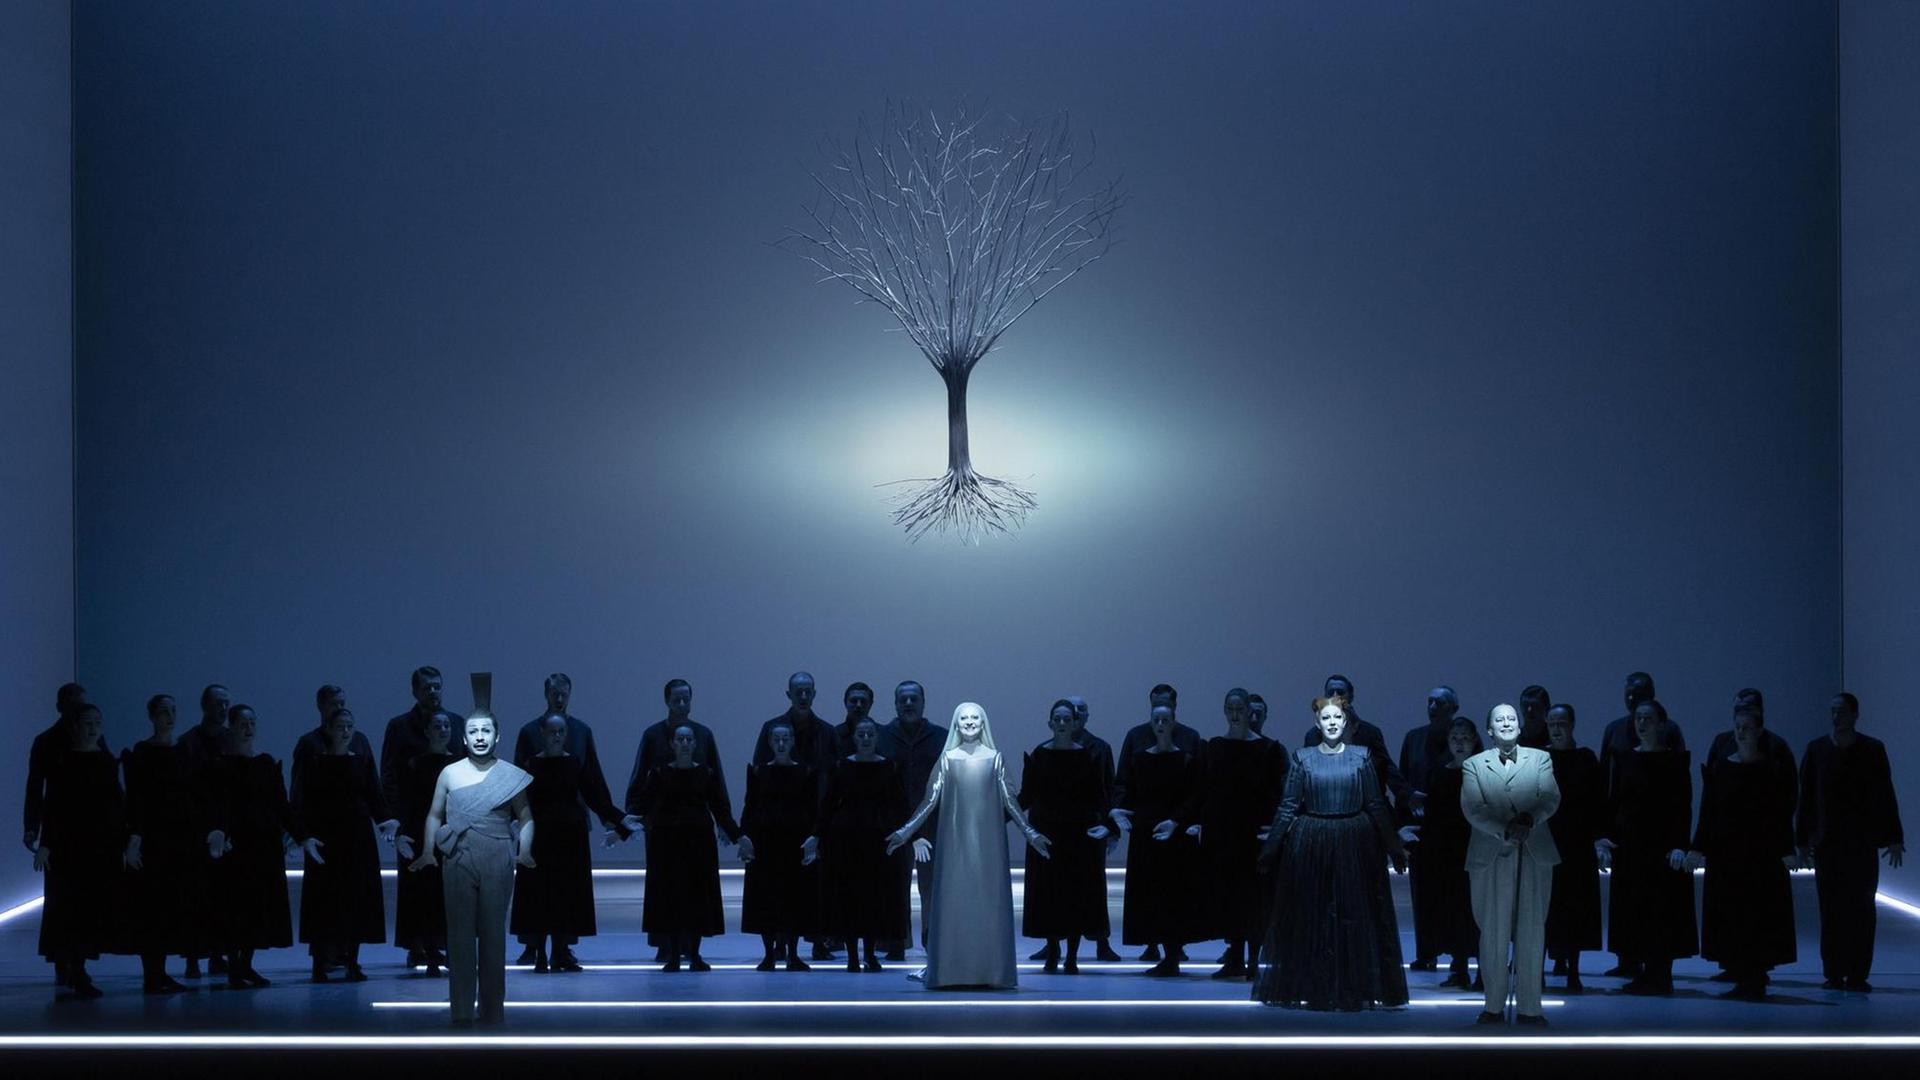 Bläulich schimmernde Szene aus dem Oratorium "Der Messias" in der Inszenierung von Robert Wilson bei der Mozartwoche 2020 in Salzburg: Chor und Solisten stehen auf der Bühne, über ihnen schwebt das Bild eines Baumes mit Wurzelwerk.